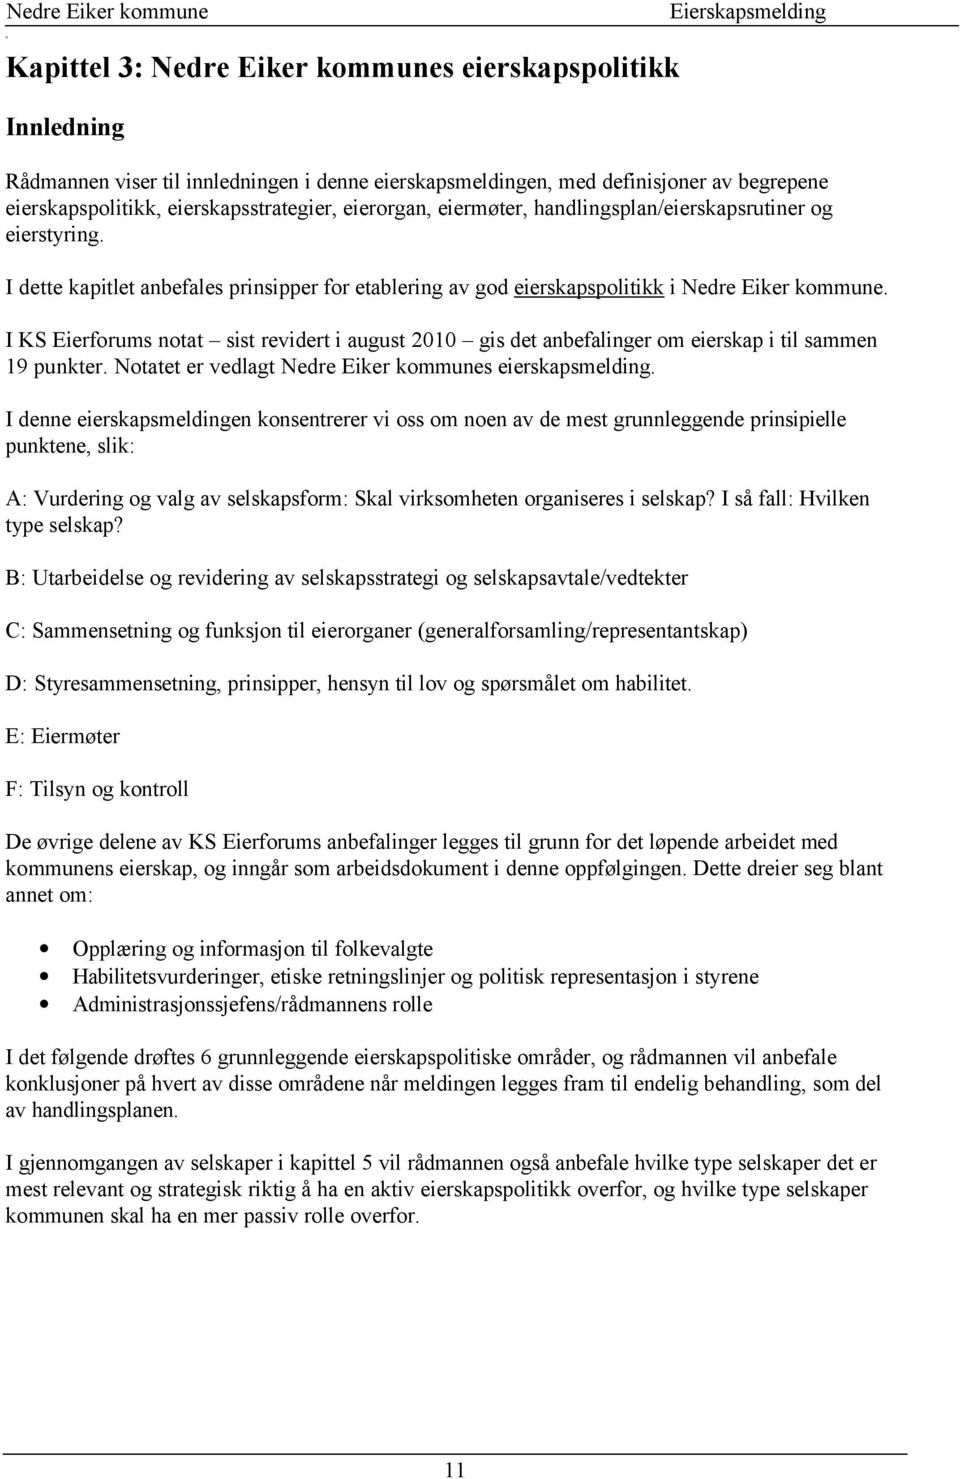 I KS Eierforums notat sist revidert i august 2010 gis det anbefalinger om eierskap i til sammen 19 punkter. otatet er vedlagt edre Eiker kommunes eierskapsmelding.